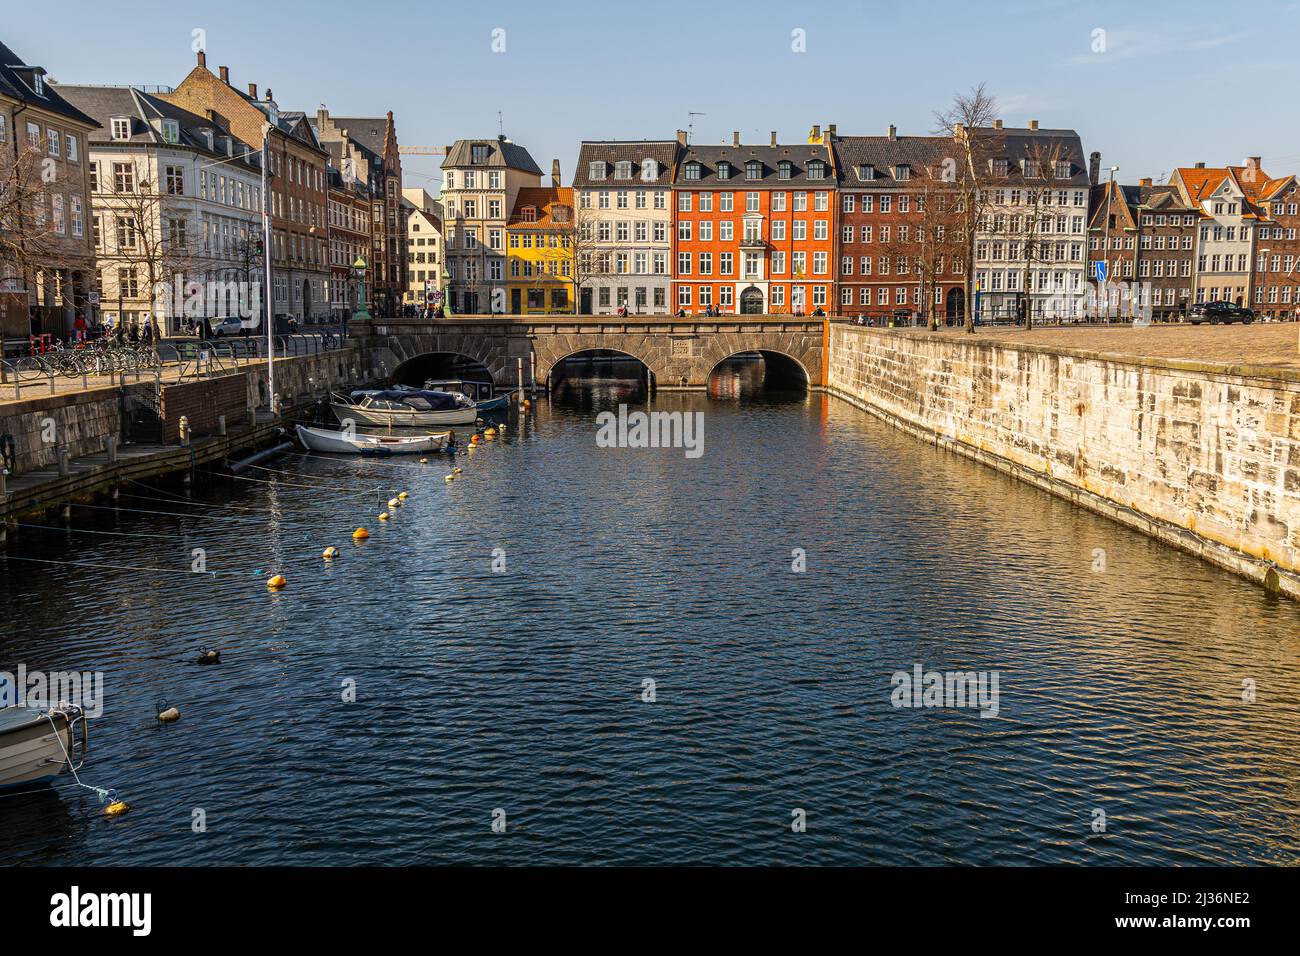 Bunte Fassaden typischer Häuser in der Altstadt von Kopenhagen. Im Vordergrund der schiffbare Kanal, der unter der Sturmbrücke fließt. Dänemark Stockfoto